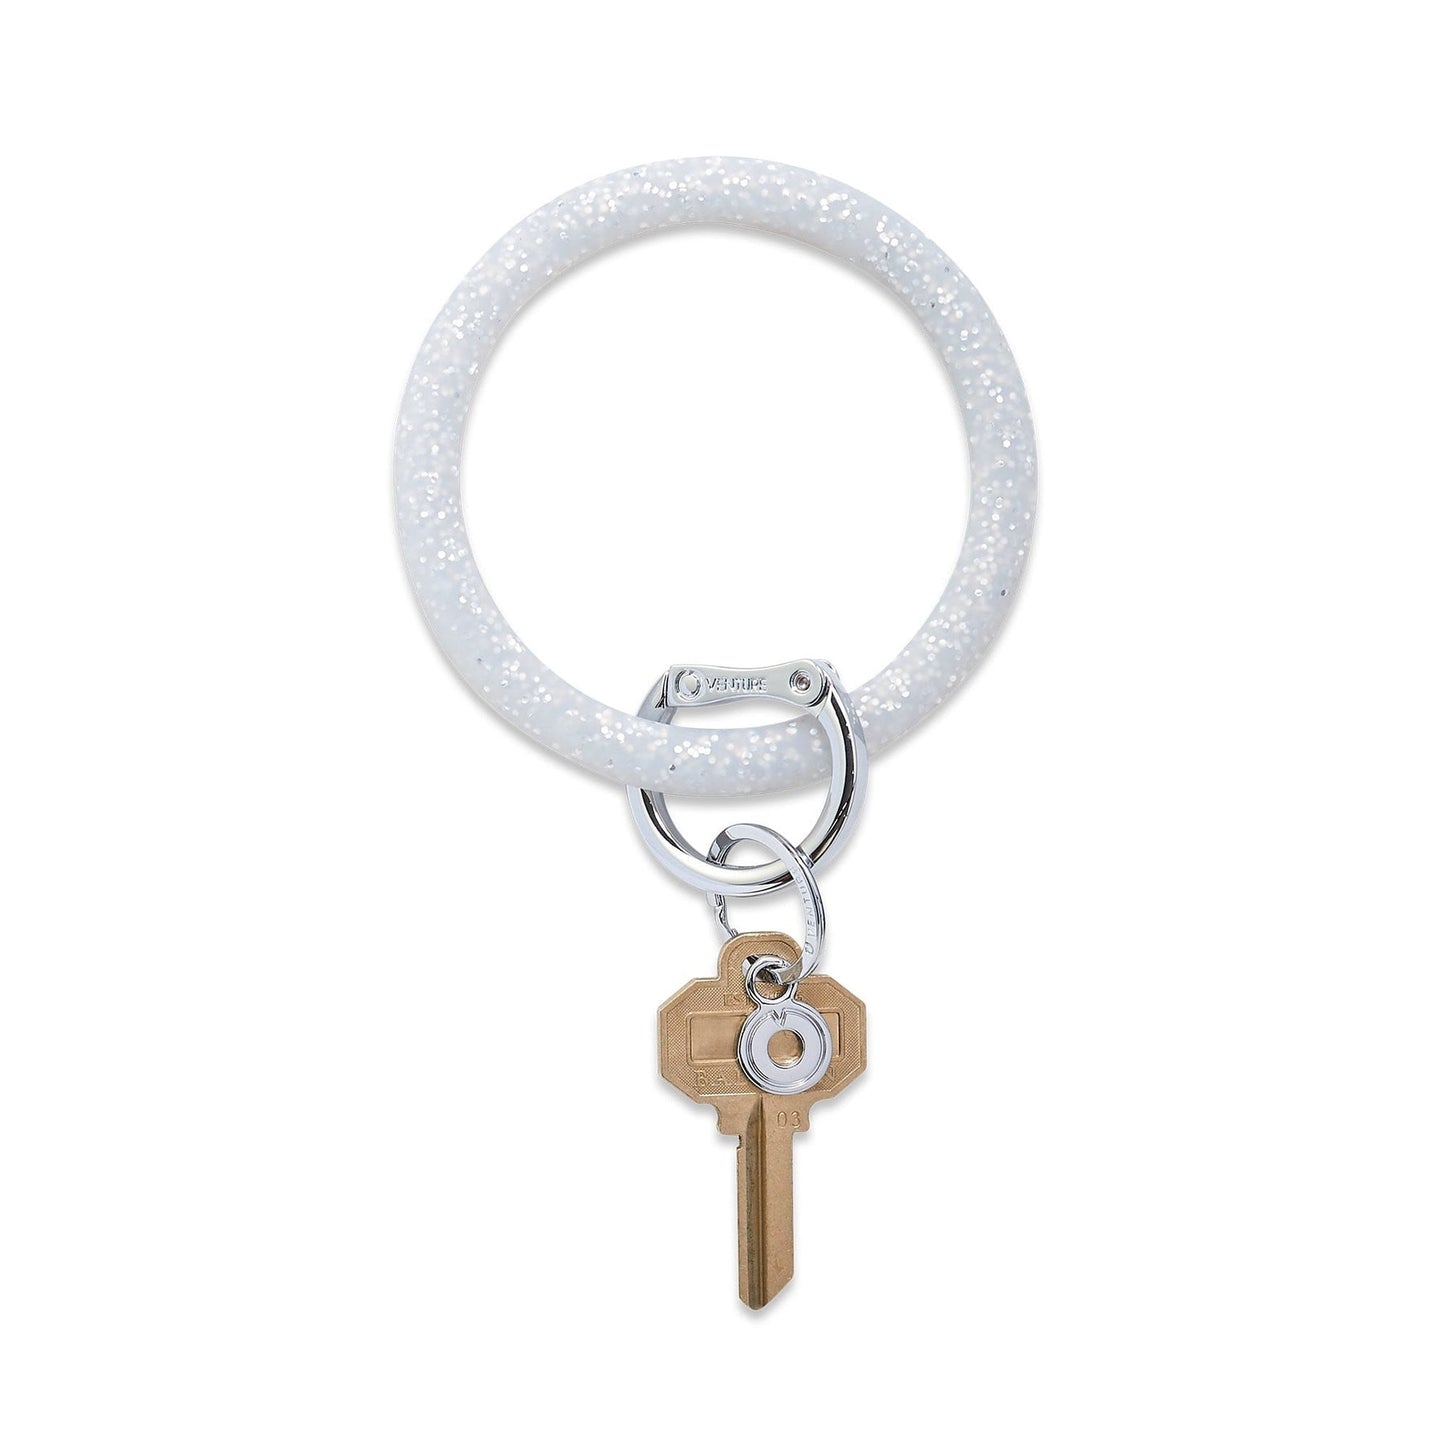 O-Venture Silicone Confetti Key Ring